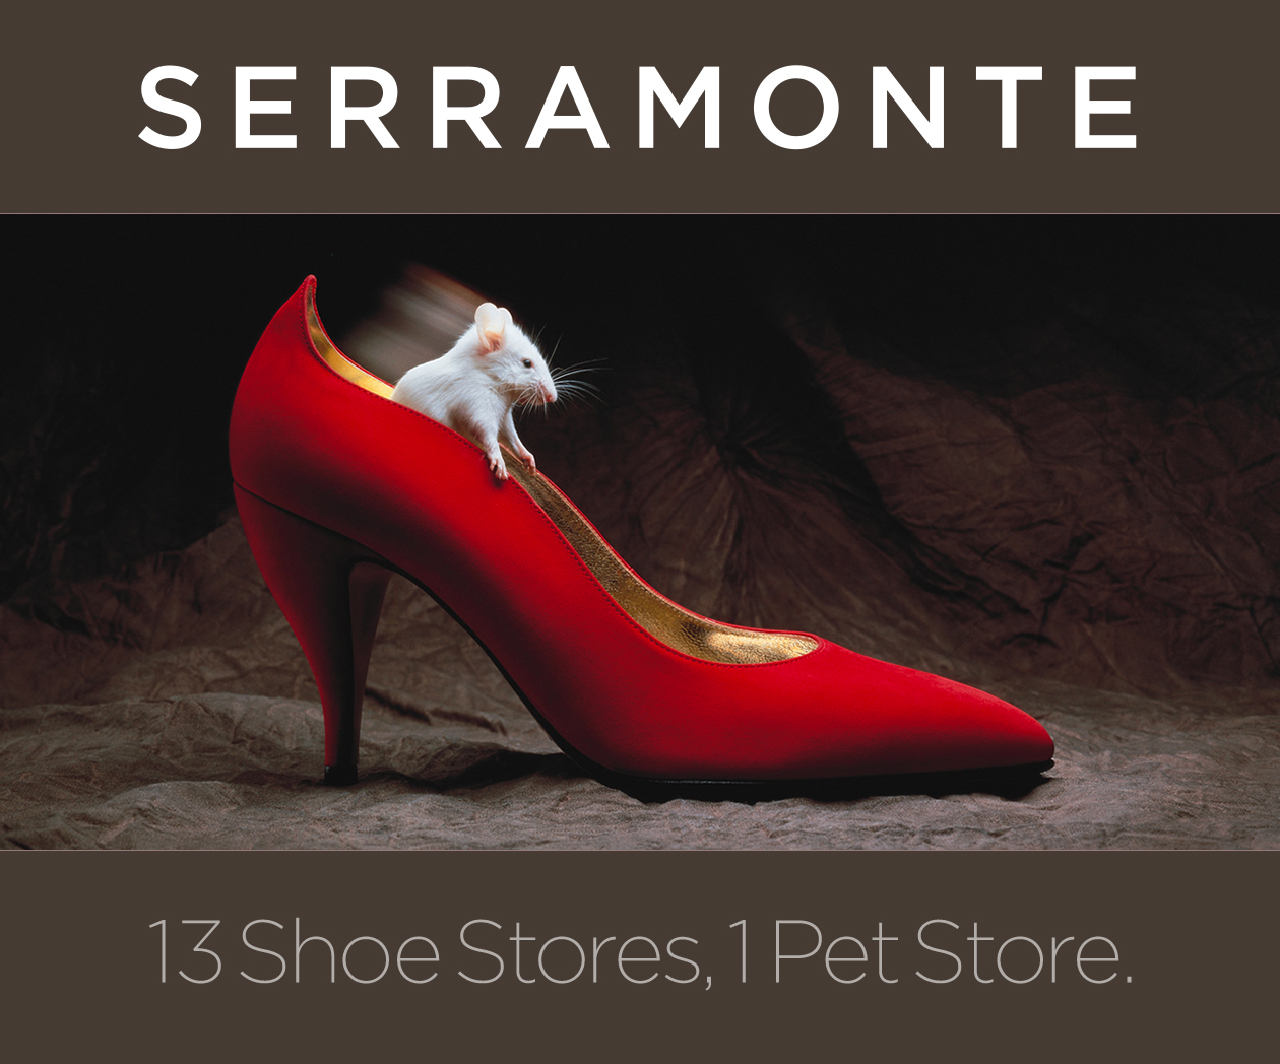 13 Shoe Stores, 1 Pet Store